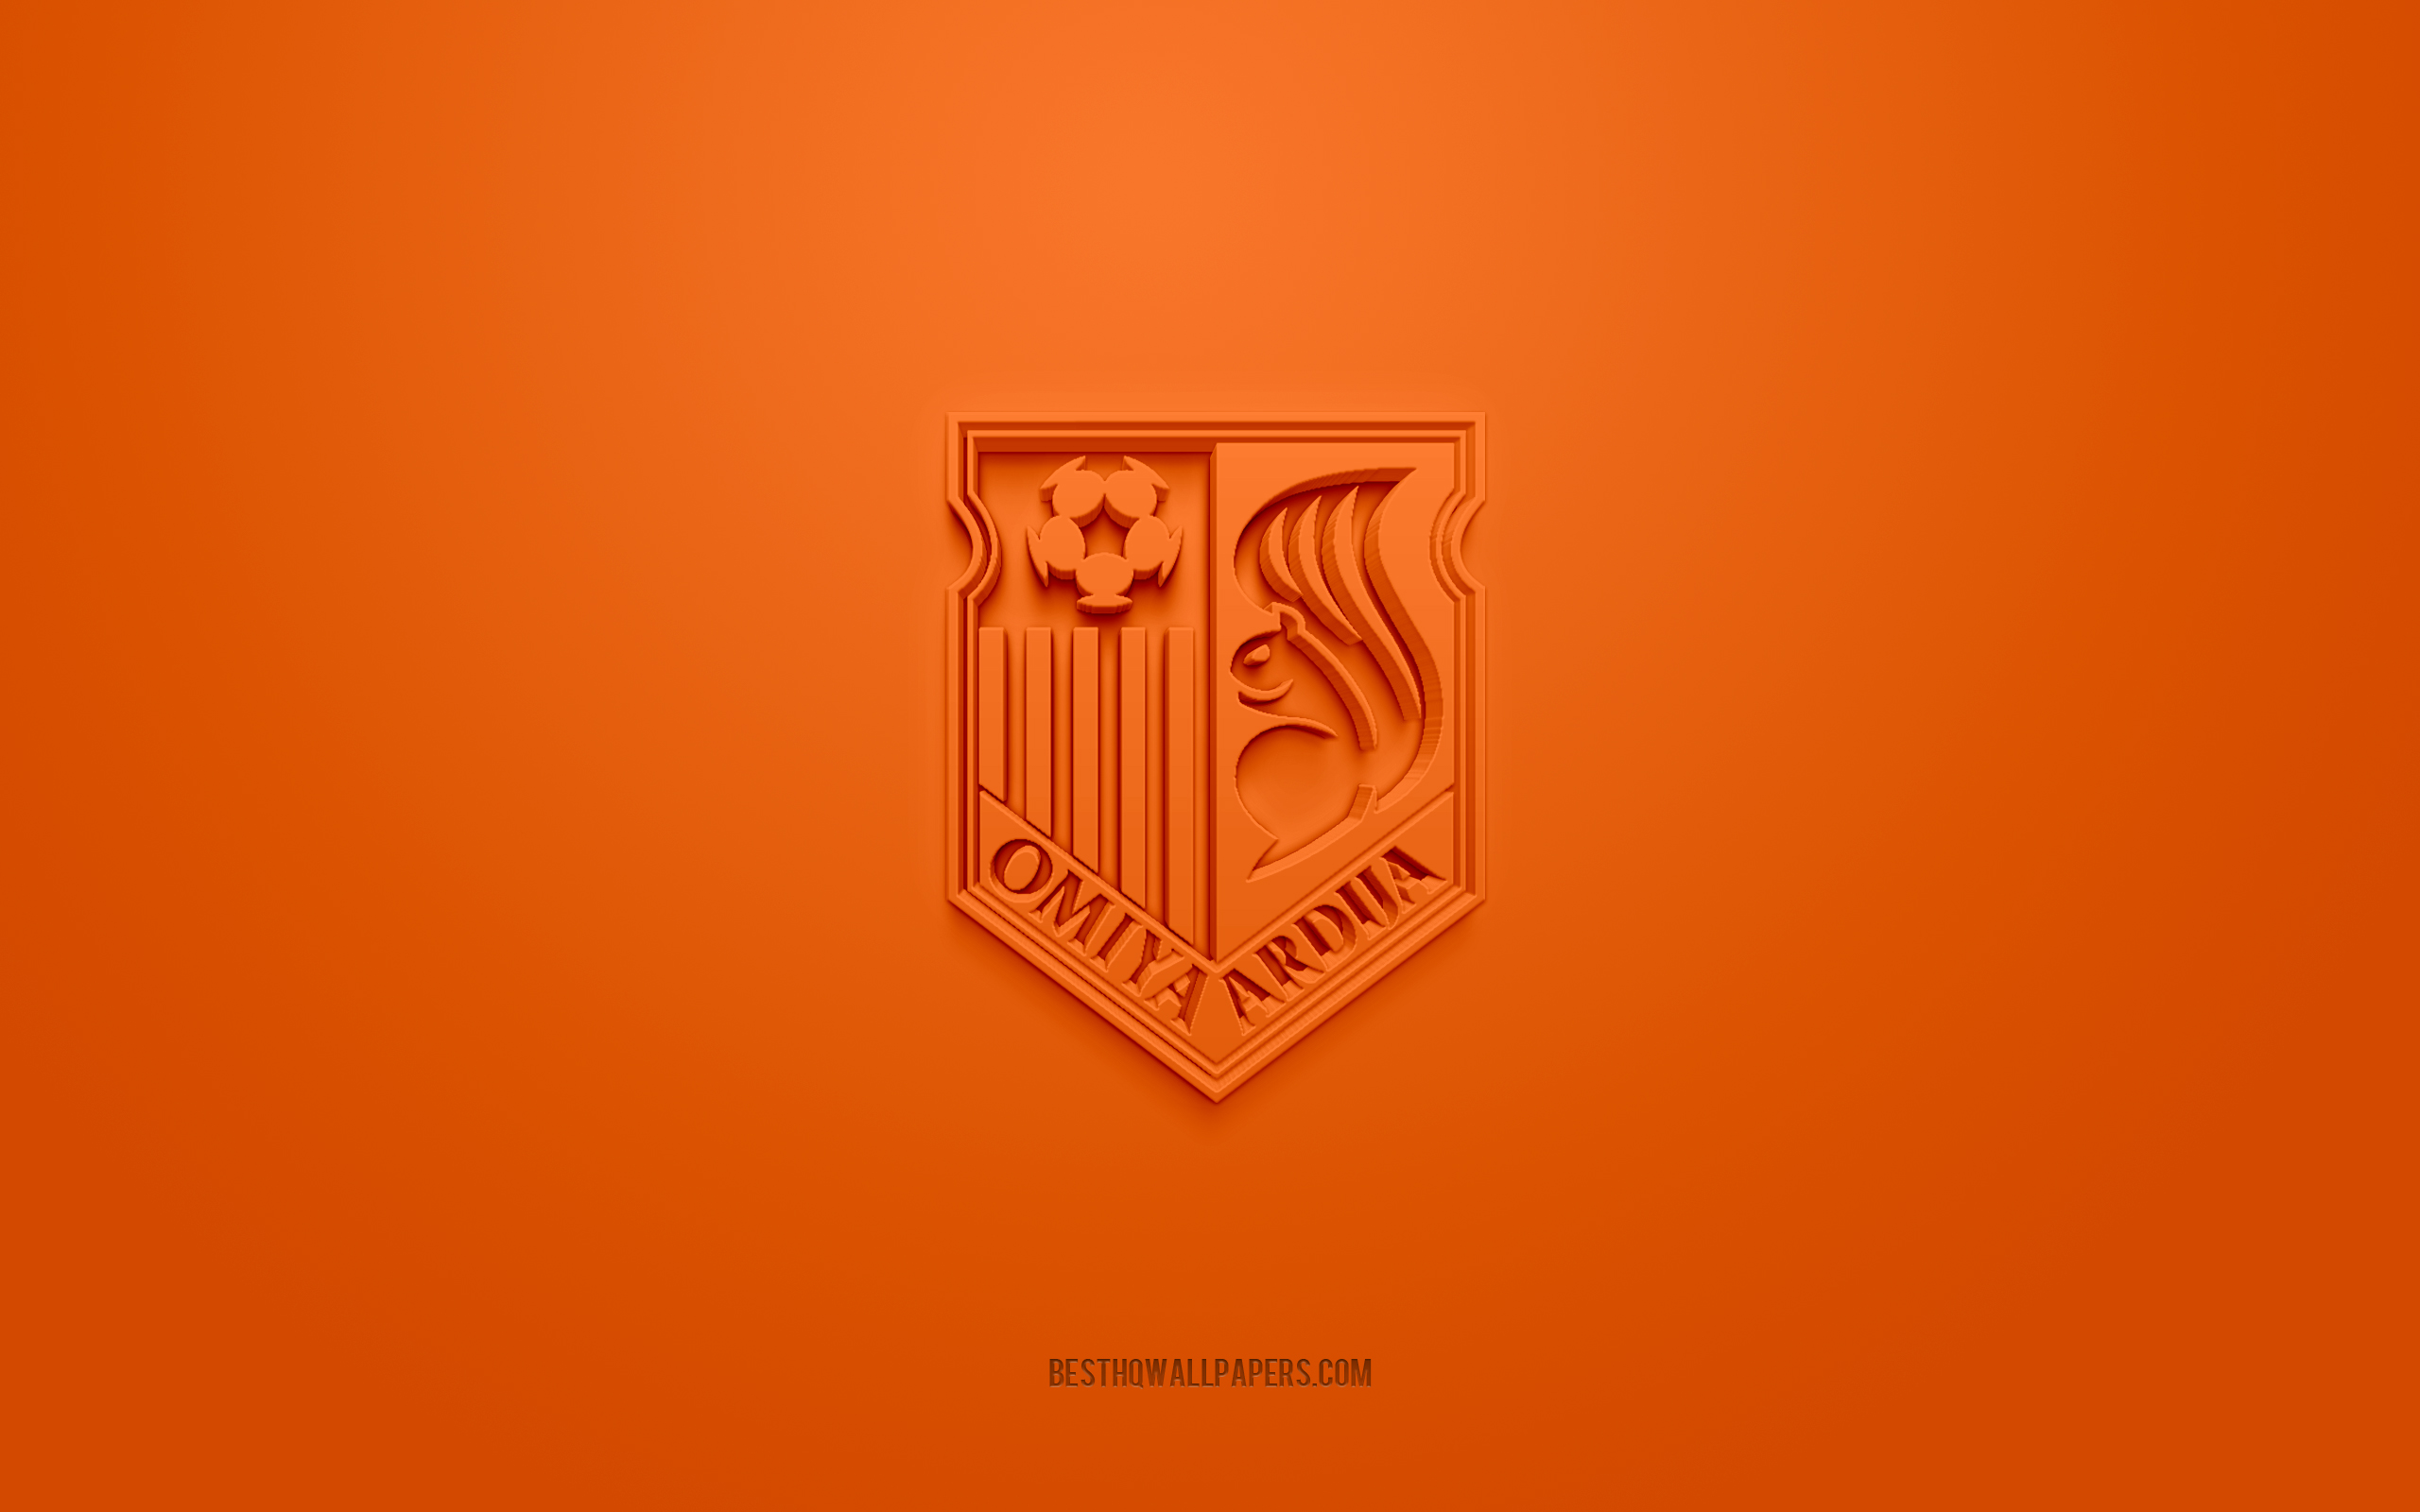 Скачать обои Omiya Ardija, creative 3D logo, orange background, J2